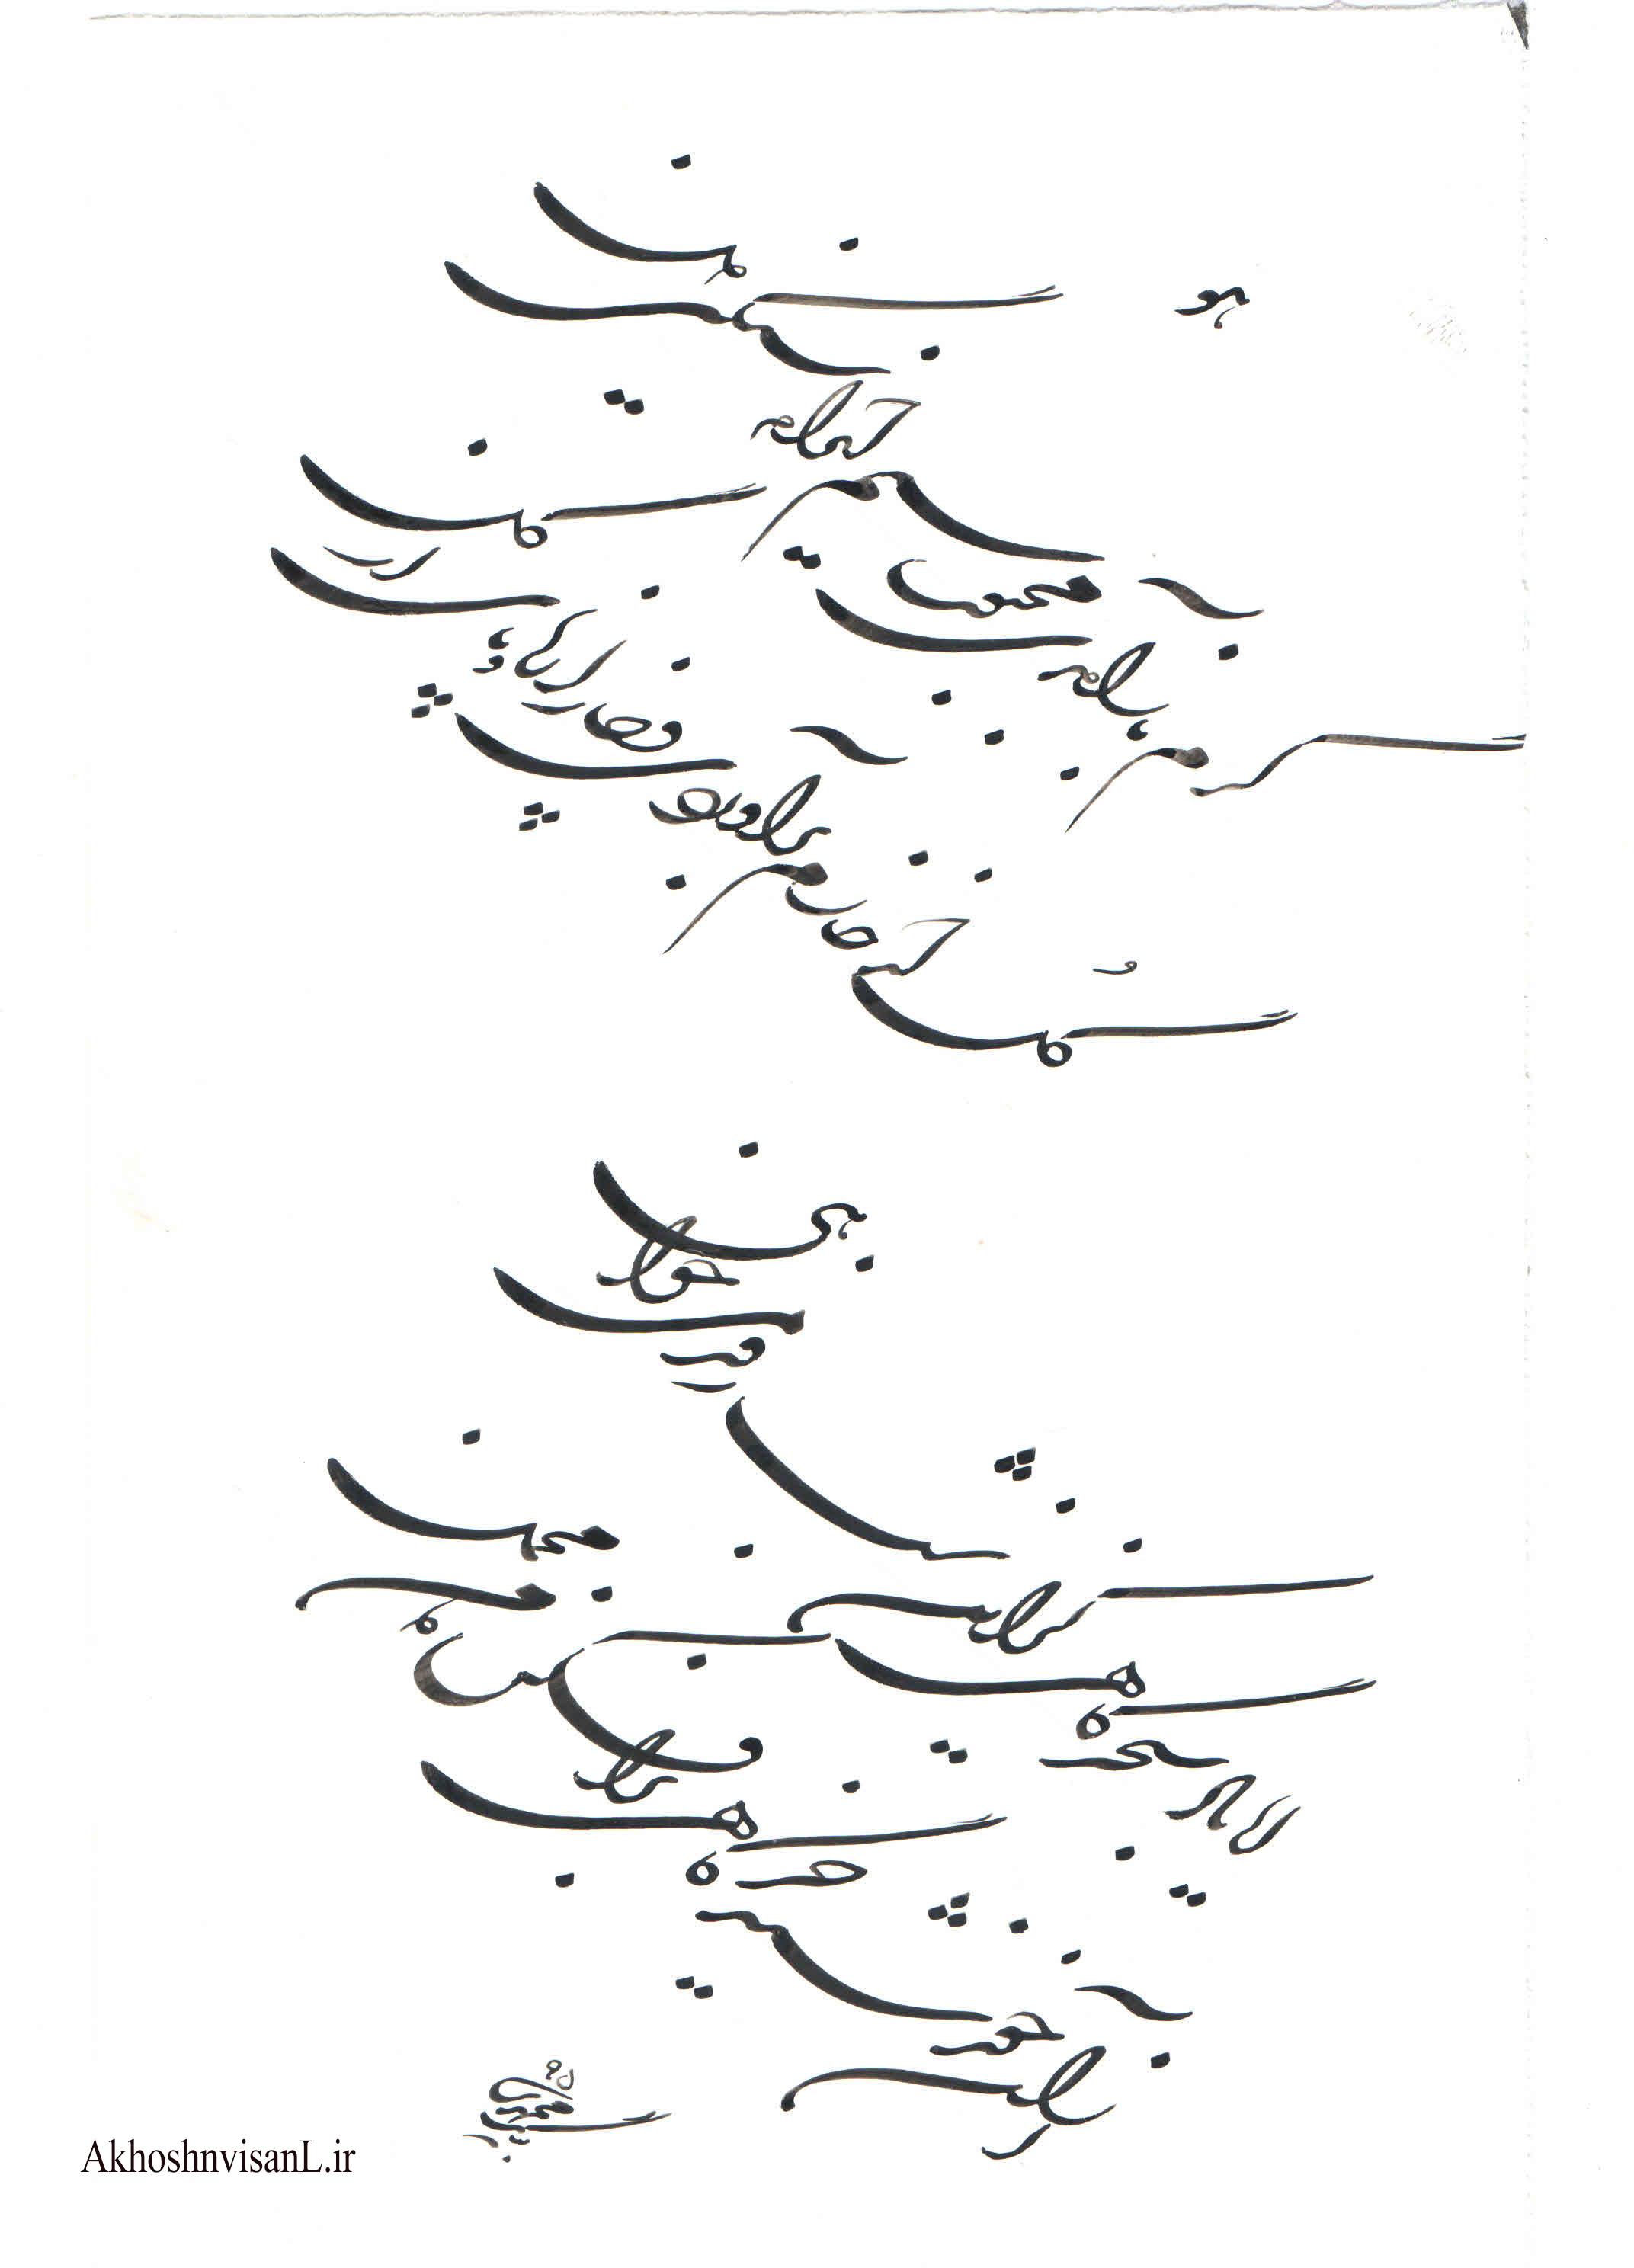 بداهه نویسی بسیار زیبای استاد بیگ محمدی در سال 95